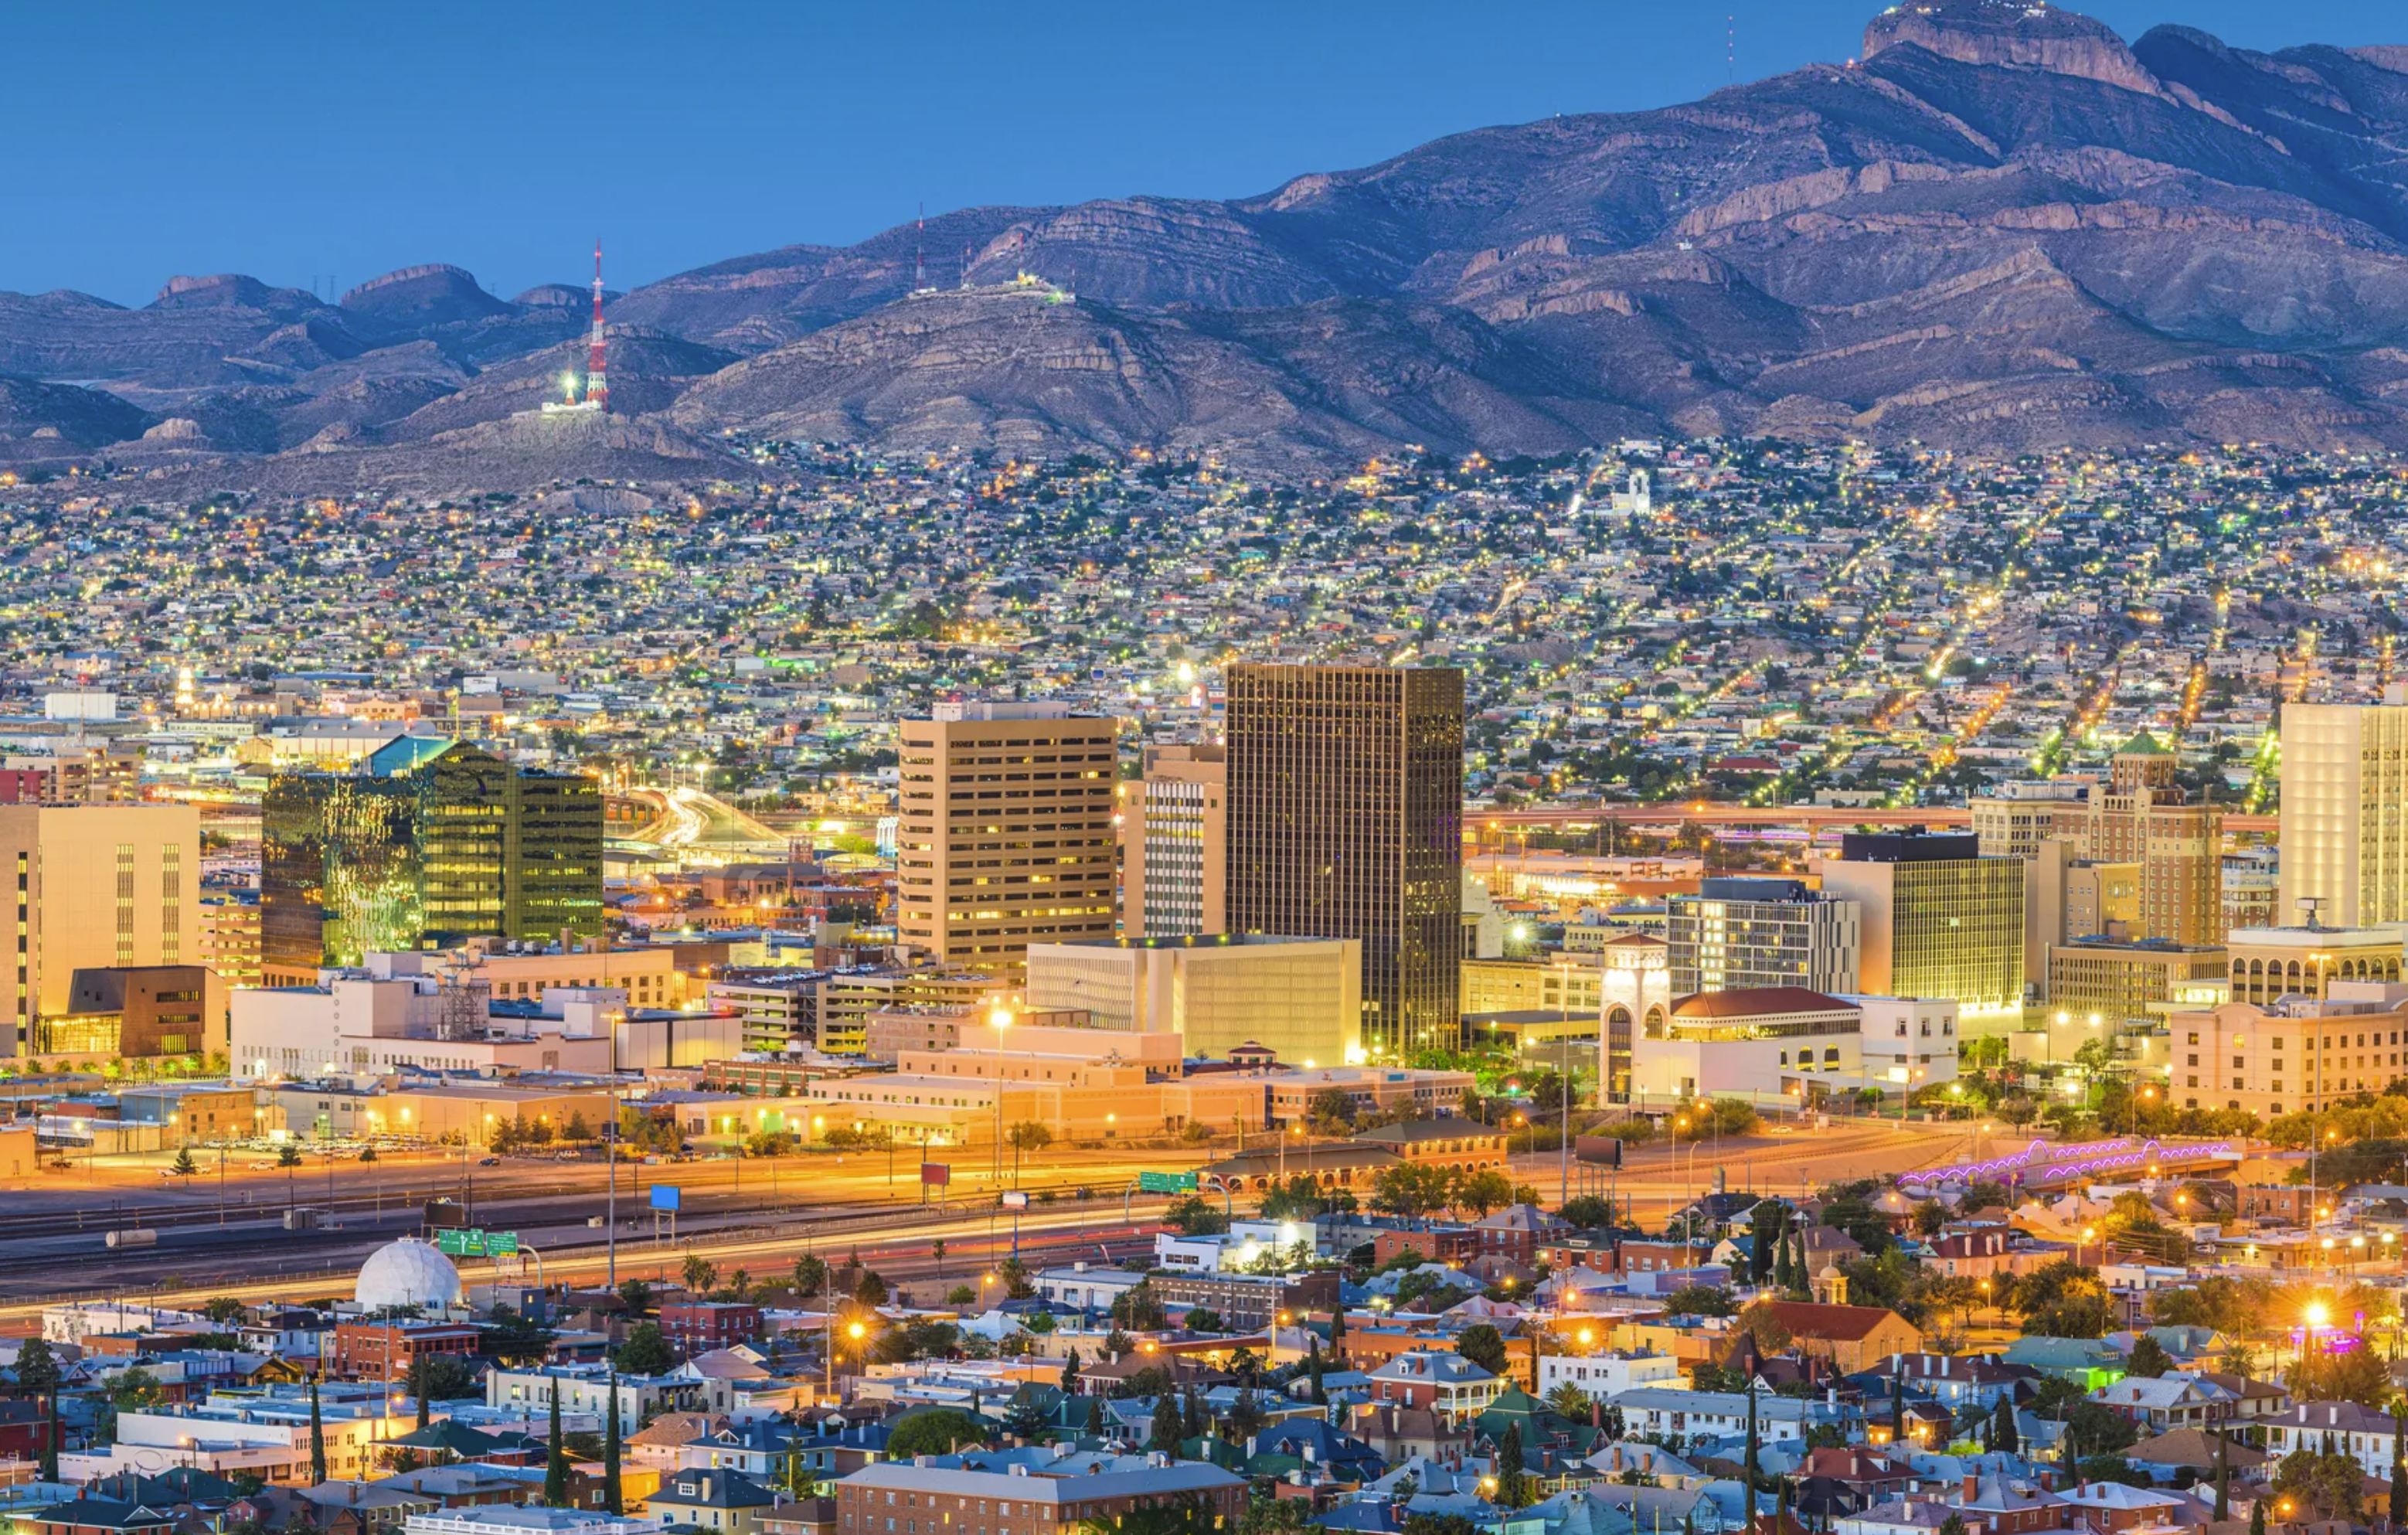 Case Study: Visit El Paso